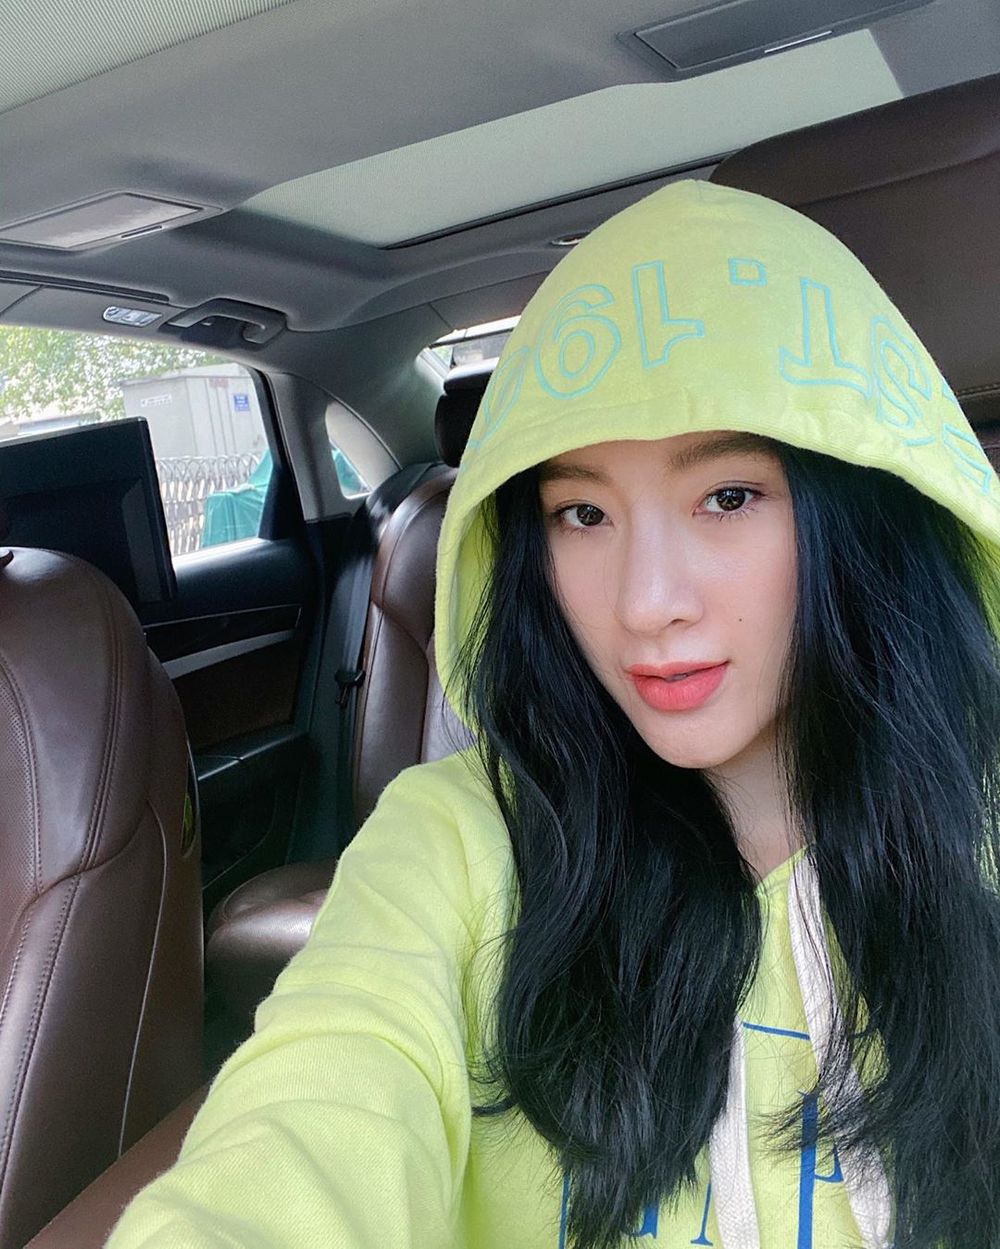  
Angela Phương Trinh sau một thời gian chỉ đăng ảnh diện đồ phật tử và áo dài bất đã quay trở lại với hoodie trẻ trung đúng độ tuổi. (Ảnh: Instagram nhân vật)